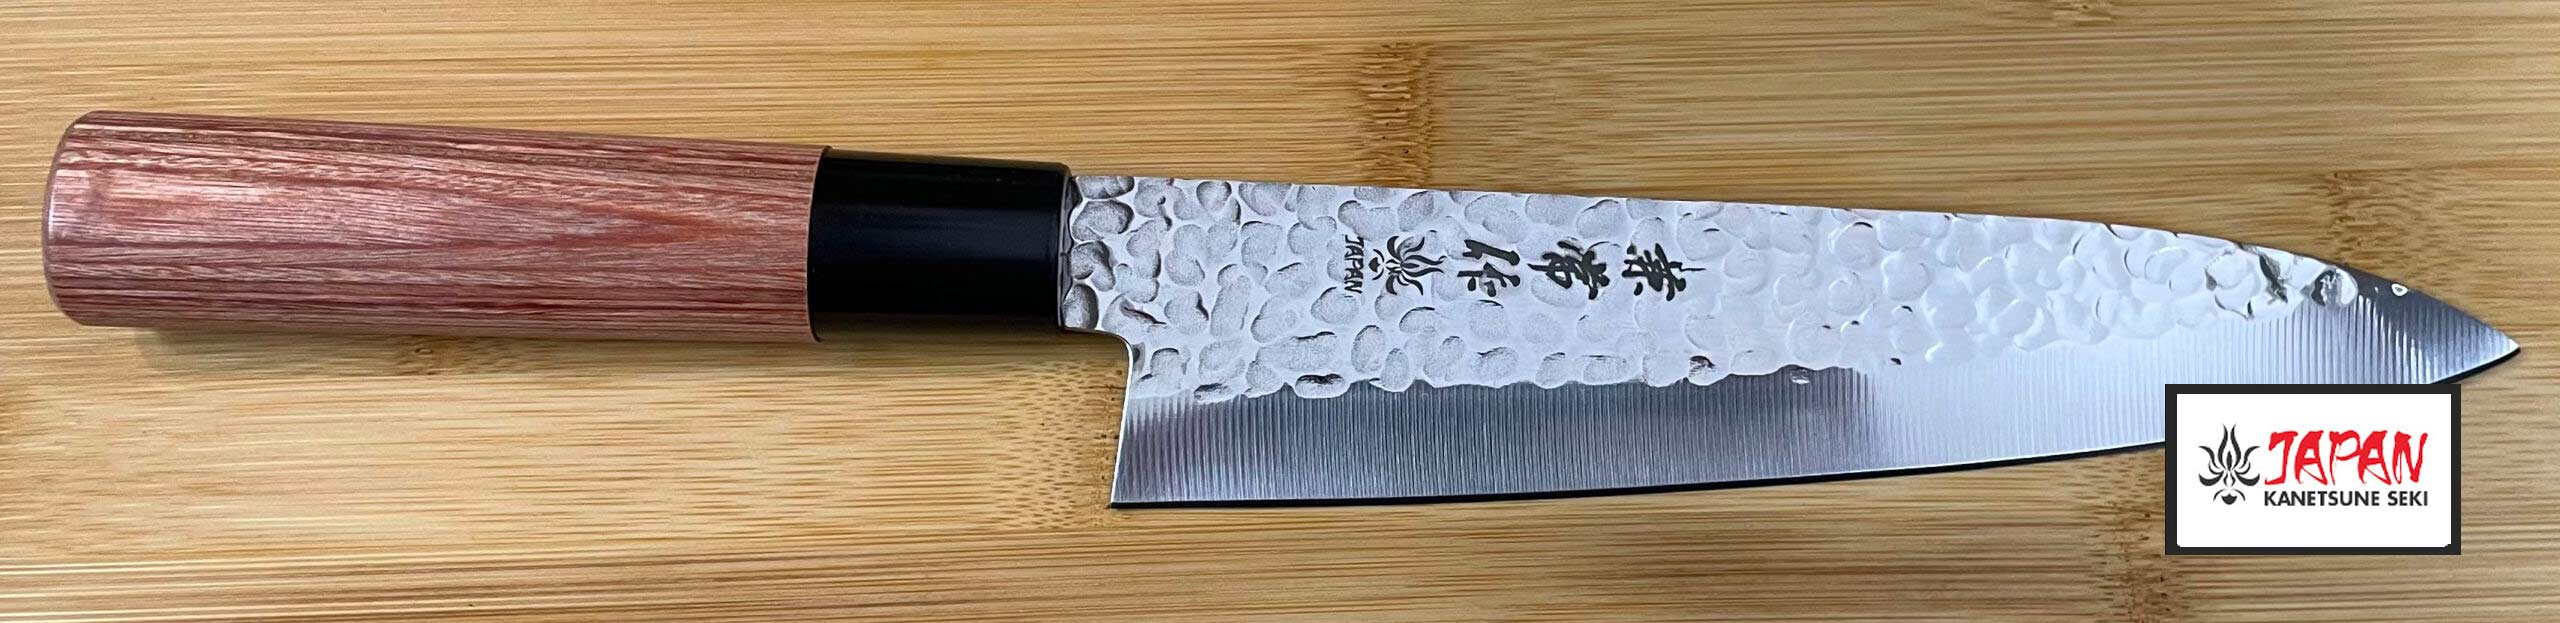 Couteau de cuisine Japonais Kanetsune paris